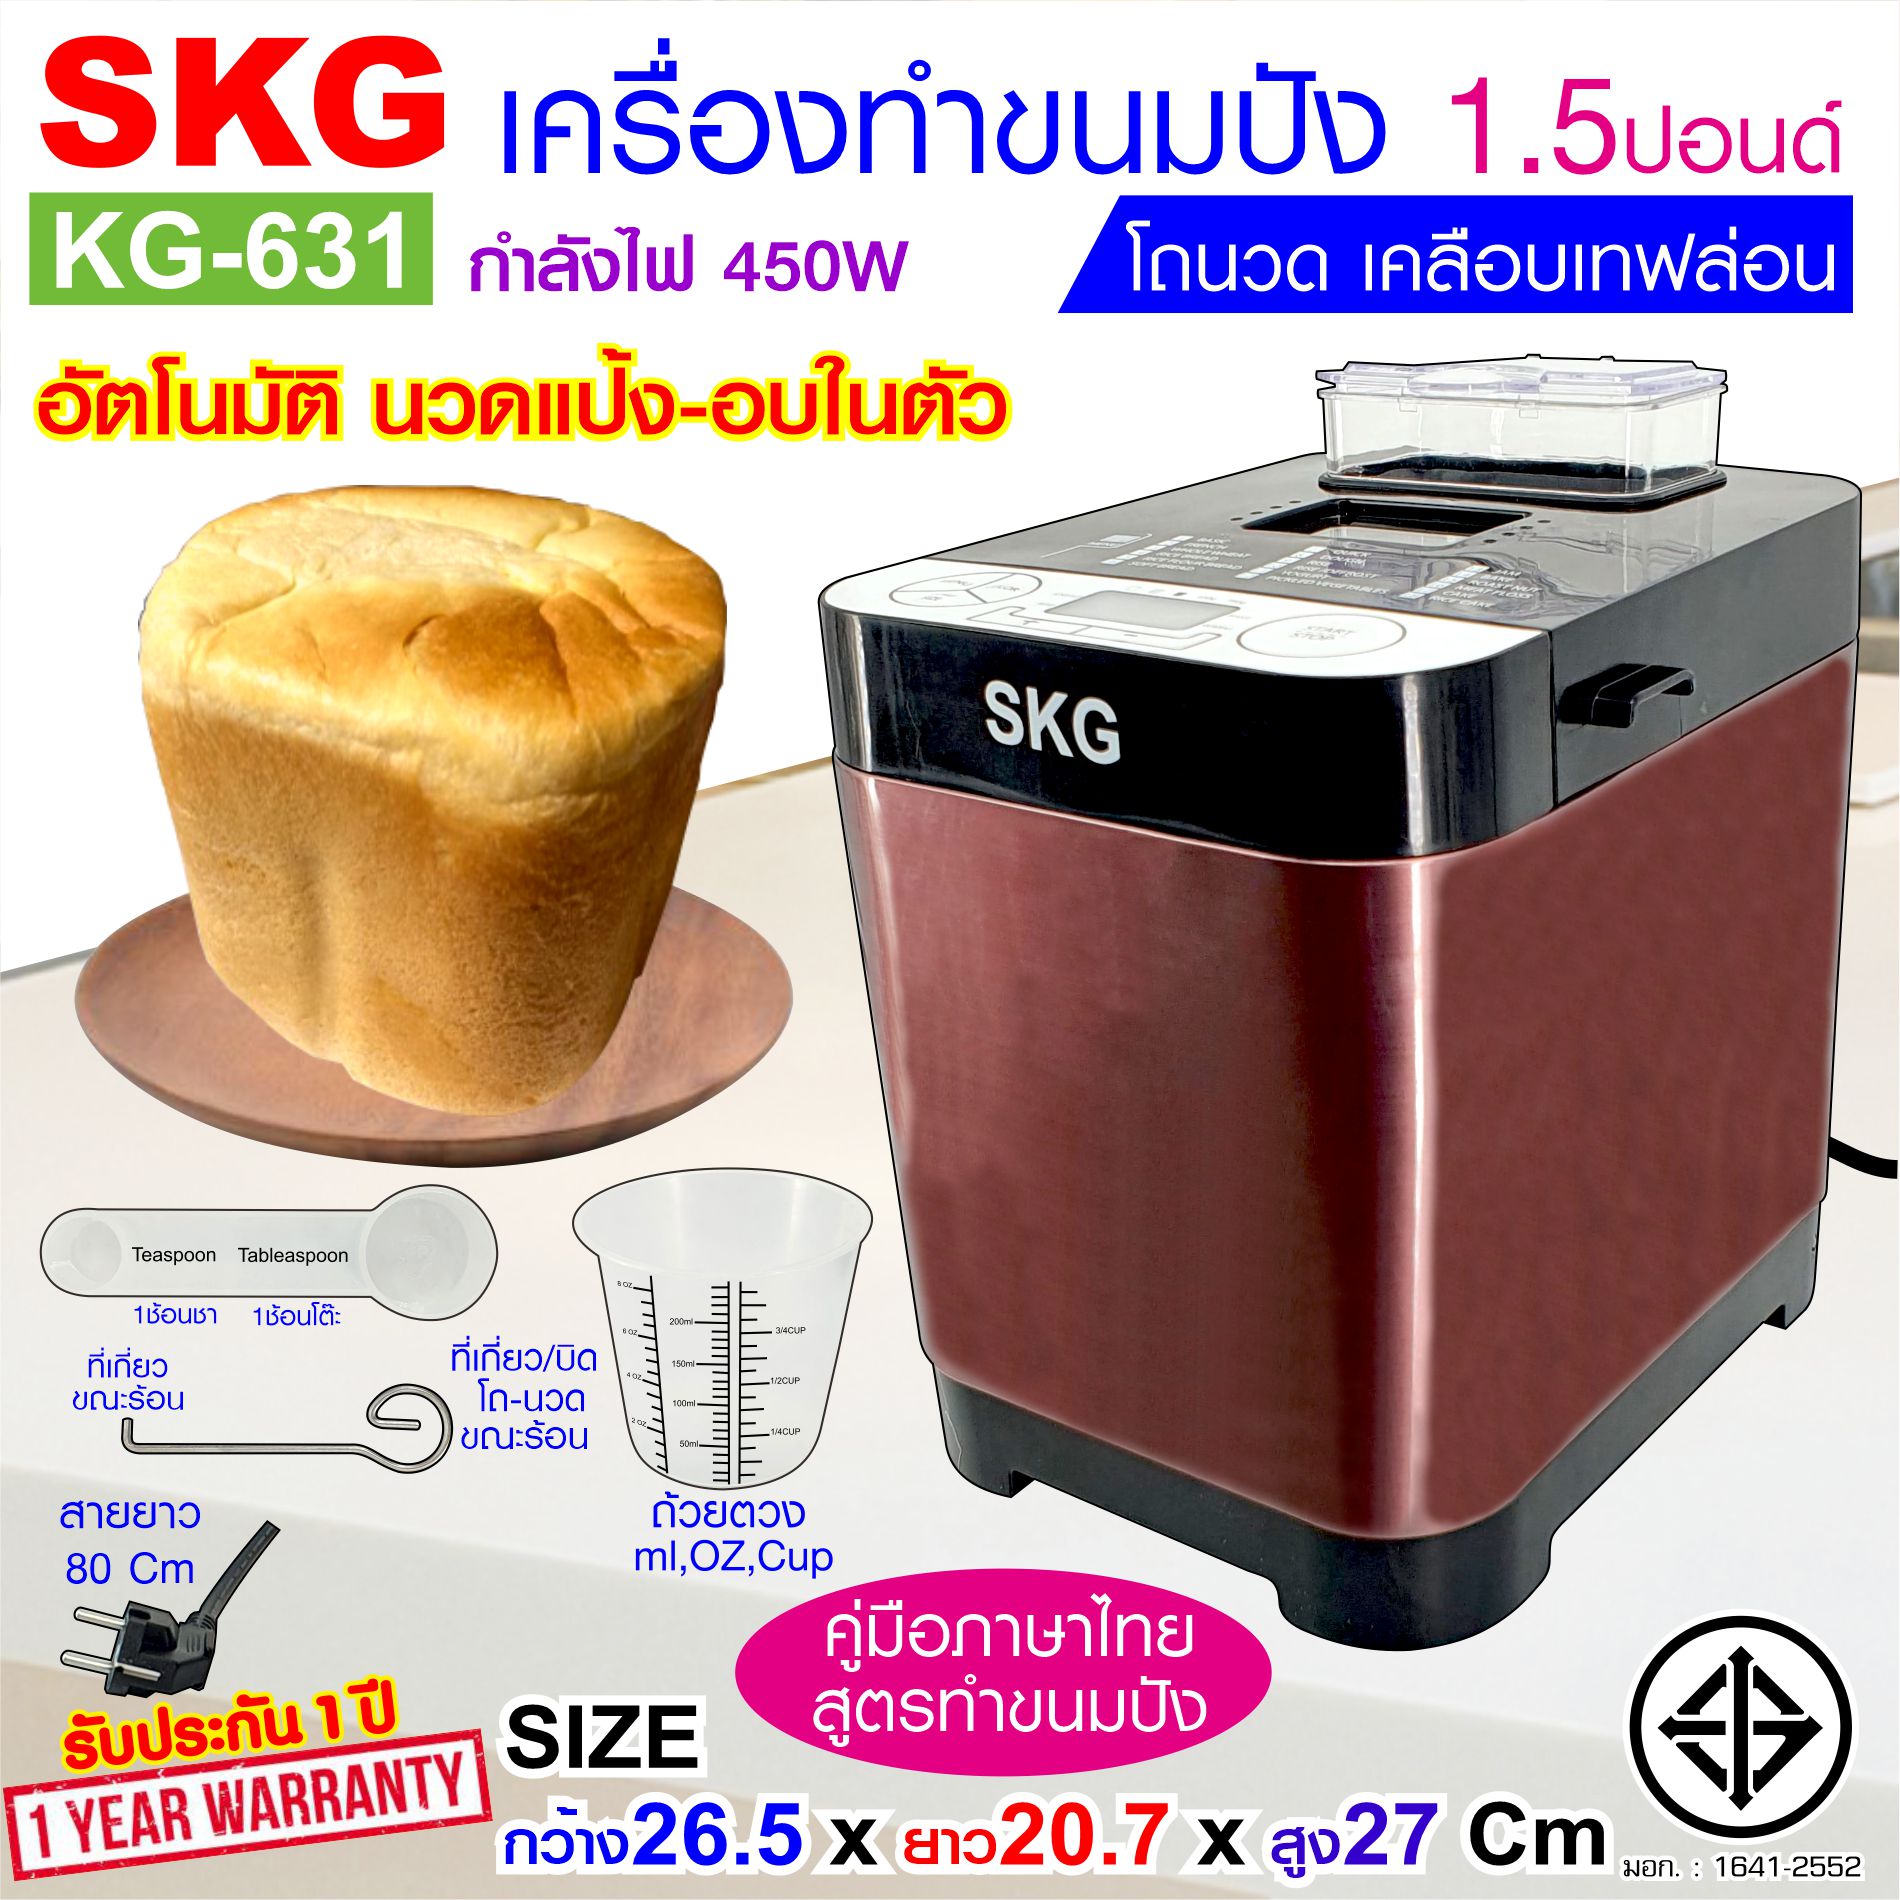 เครื่องทำขนมปัง SKG1.5ปอนด์ มีประกัน ทำขนมปังอัตโนมัติ 2in1เครื่องนวดขนมปัง+เครื่องอบขนมปัง เครื่องทำหมั่นโถว+ขนมปัง เครื่องทำขนมปัง